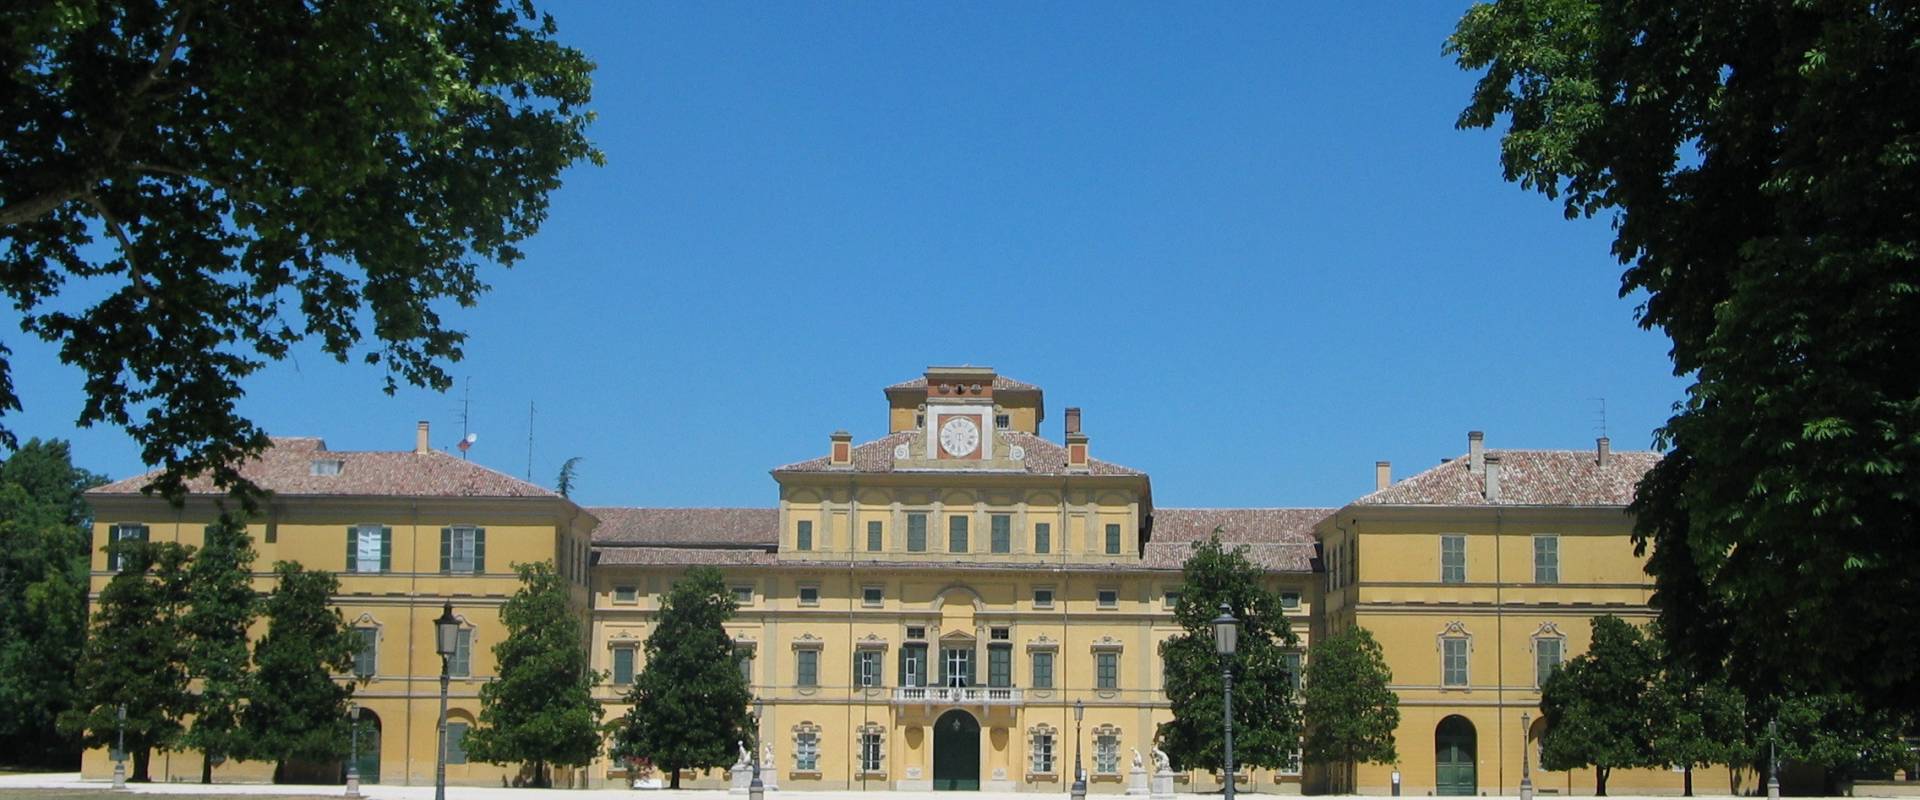 Il Palazzo Ducale all'interno del Parco Ducale di Parma foto di Carloferrari